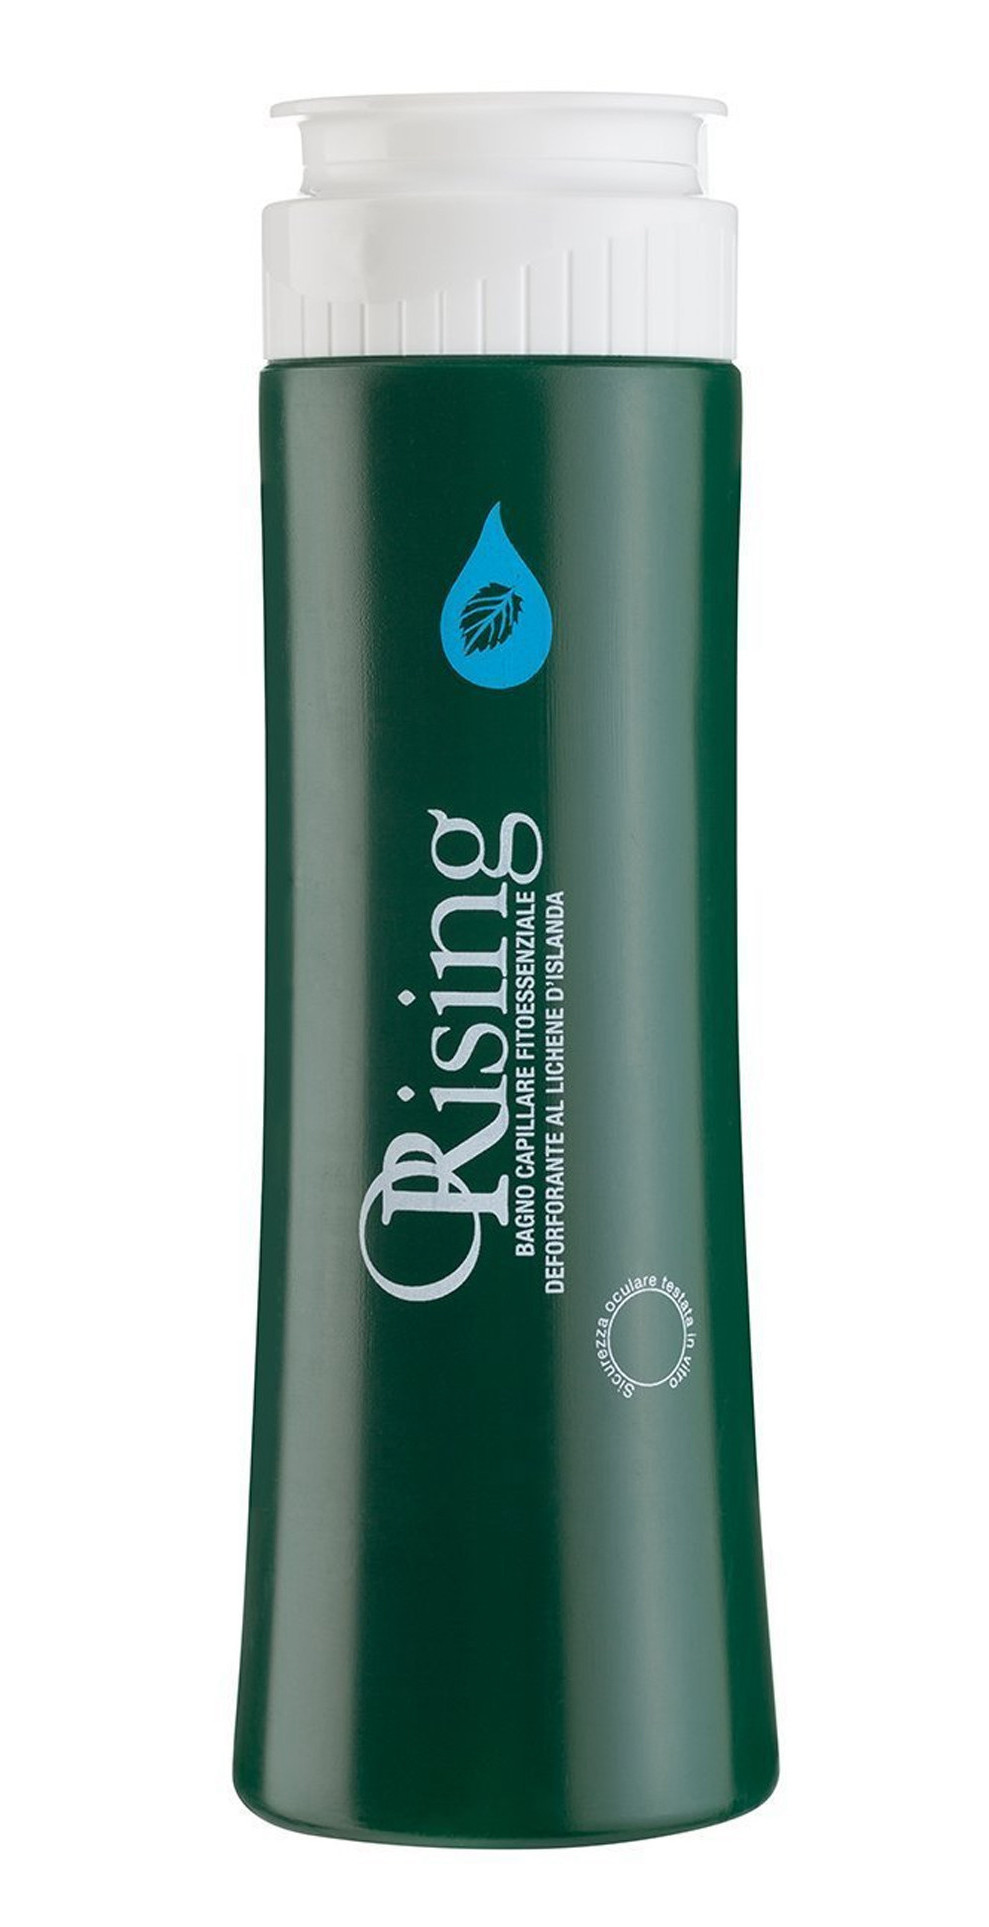 ORising - Фито-эссенциальный шампунь против перхоти Antiforfora Shampoo - Фото 1